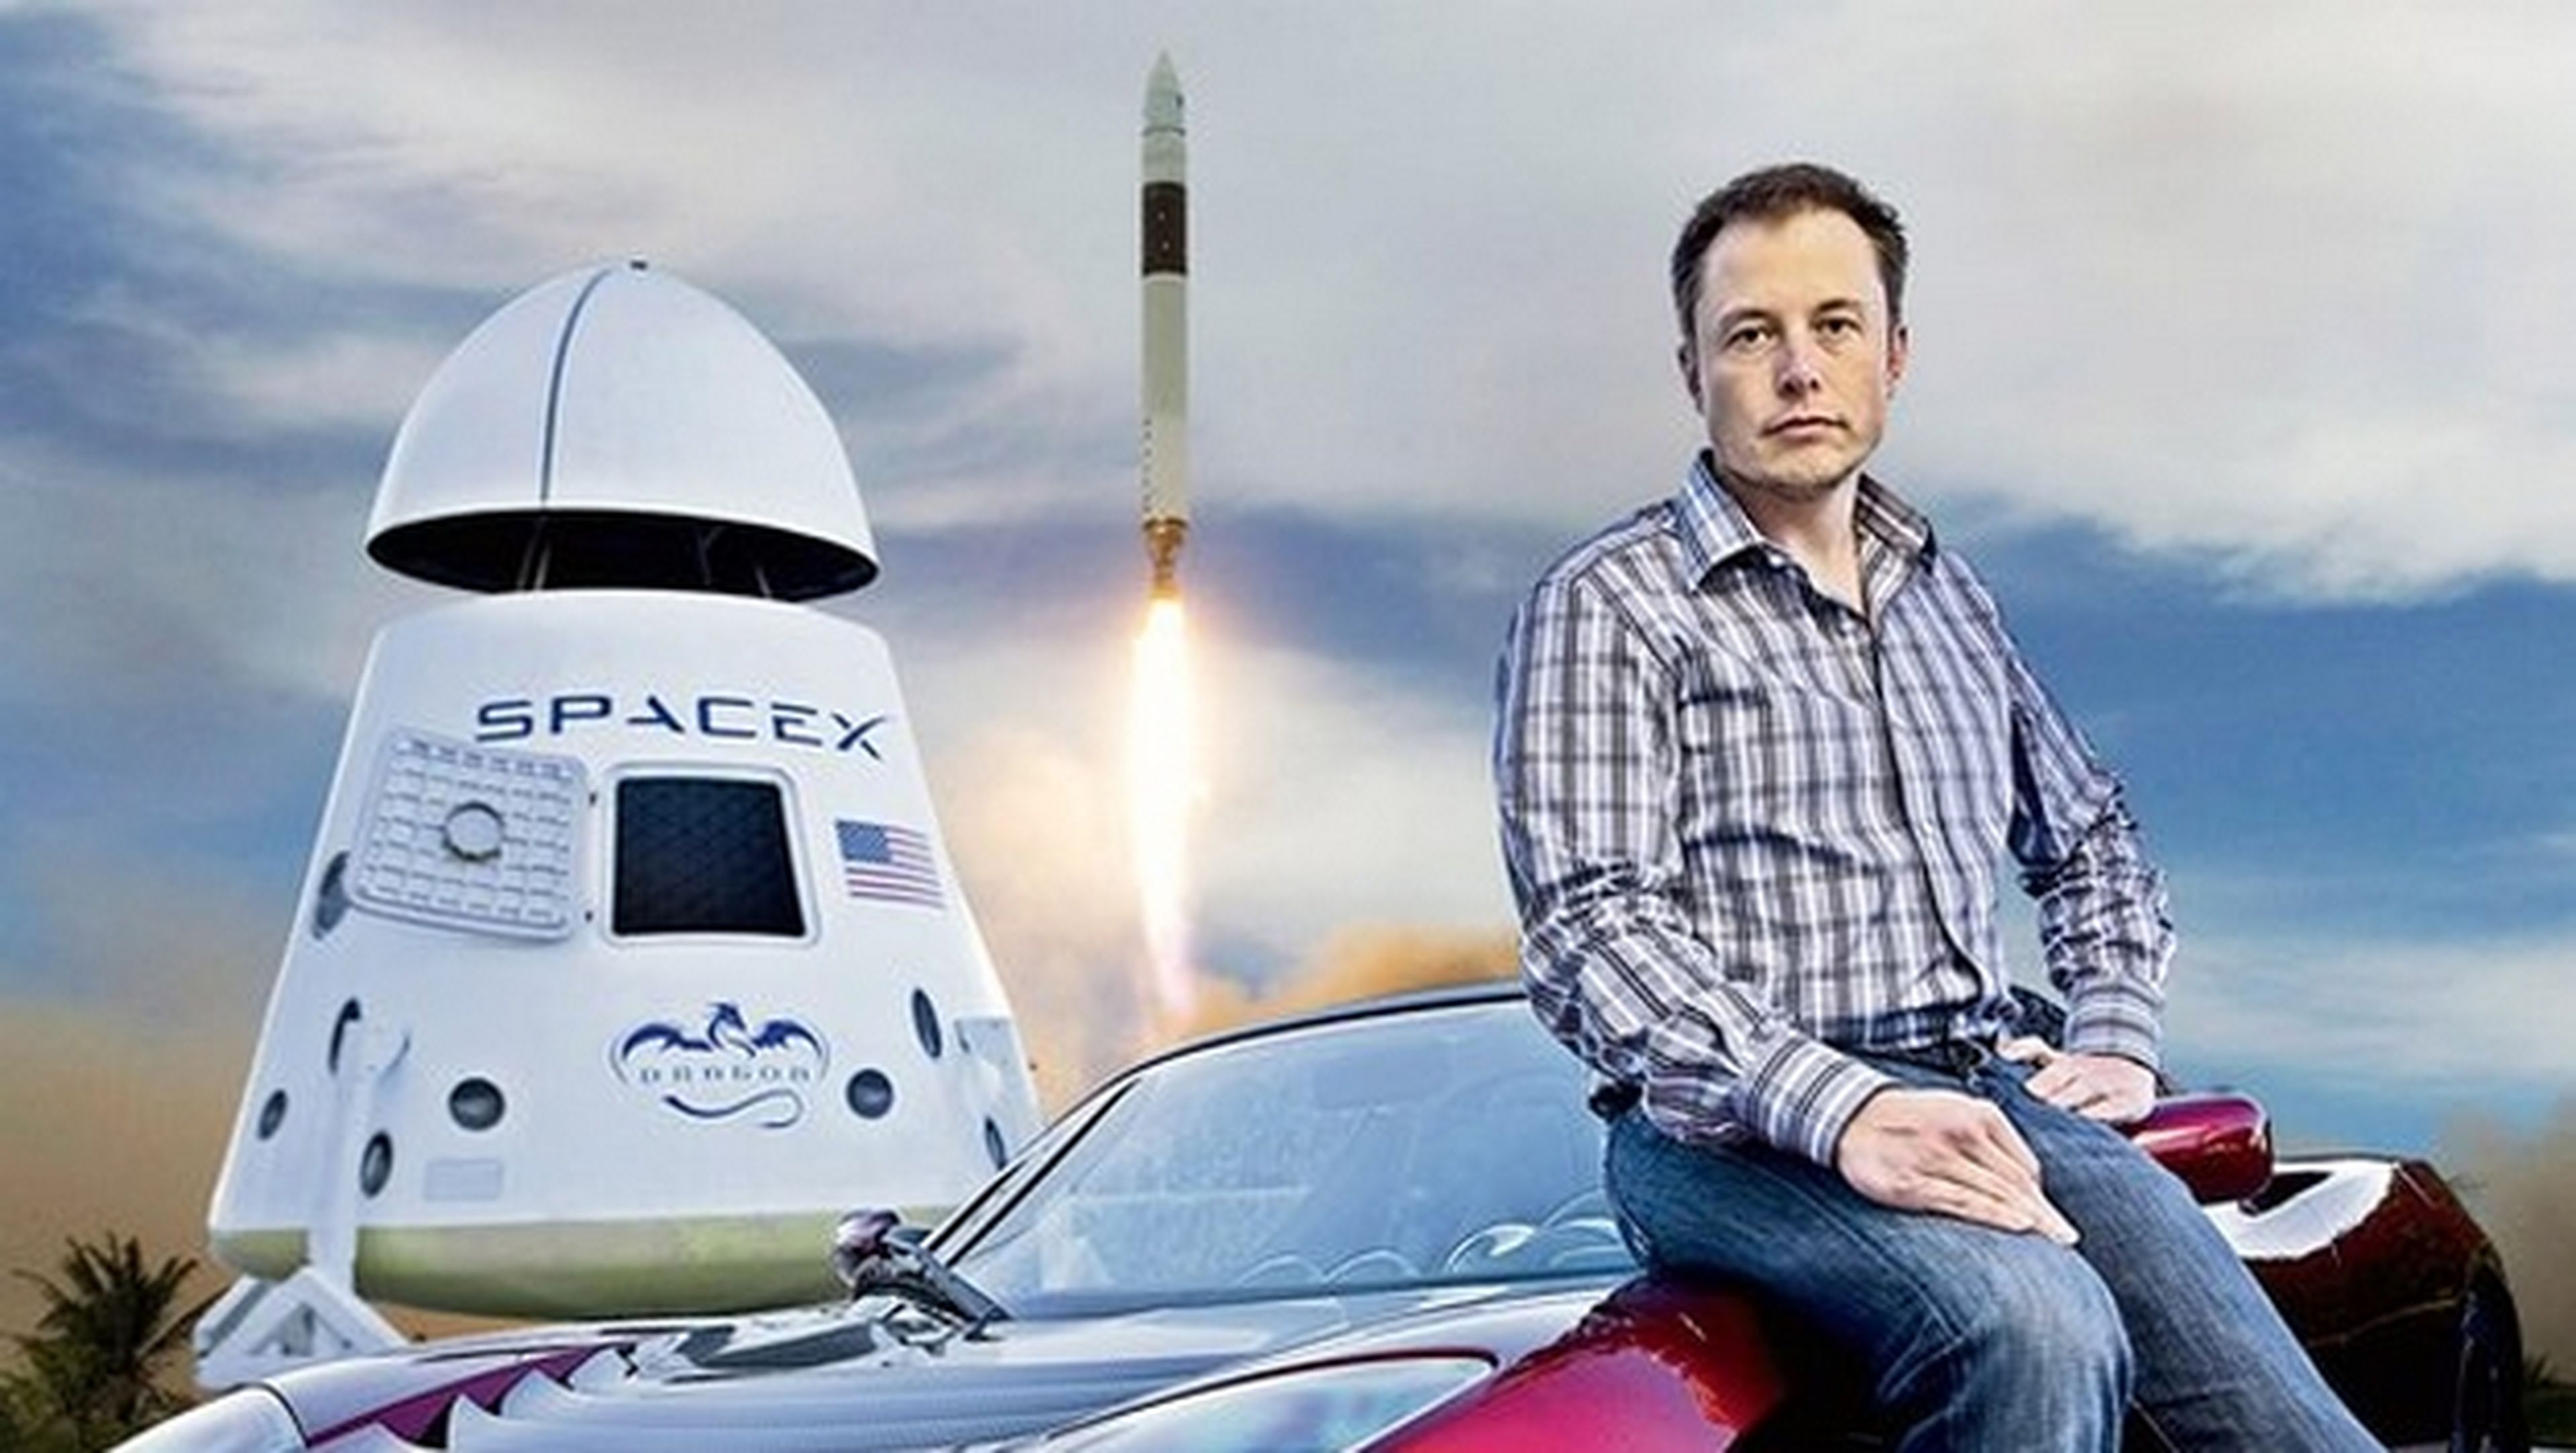 Elon Musk pondrá en órbita 700 satélites de pequeño tamaño y bajo coste para ofrecer Internet universal en todo el planeta.